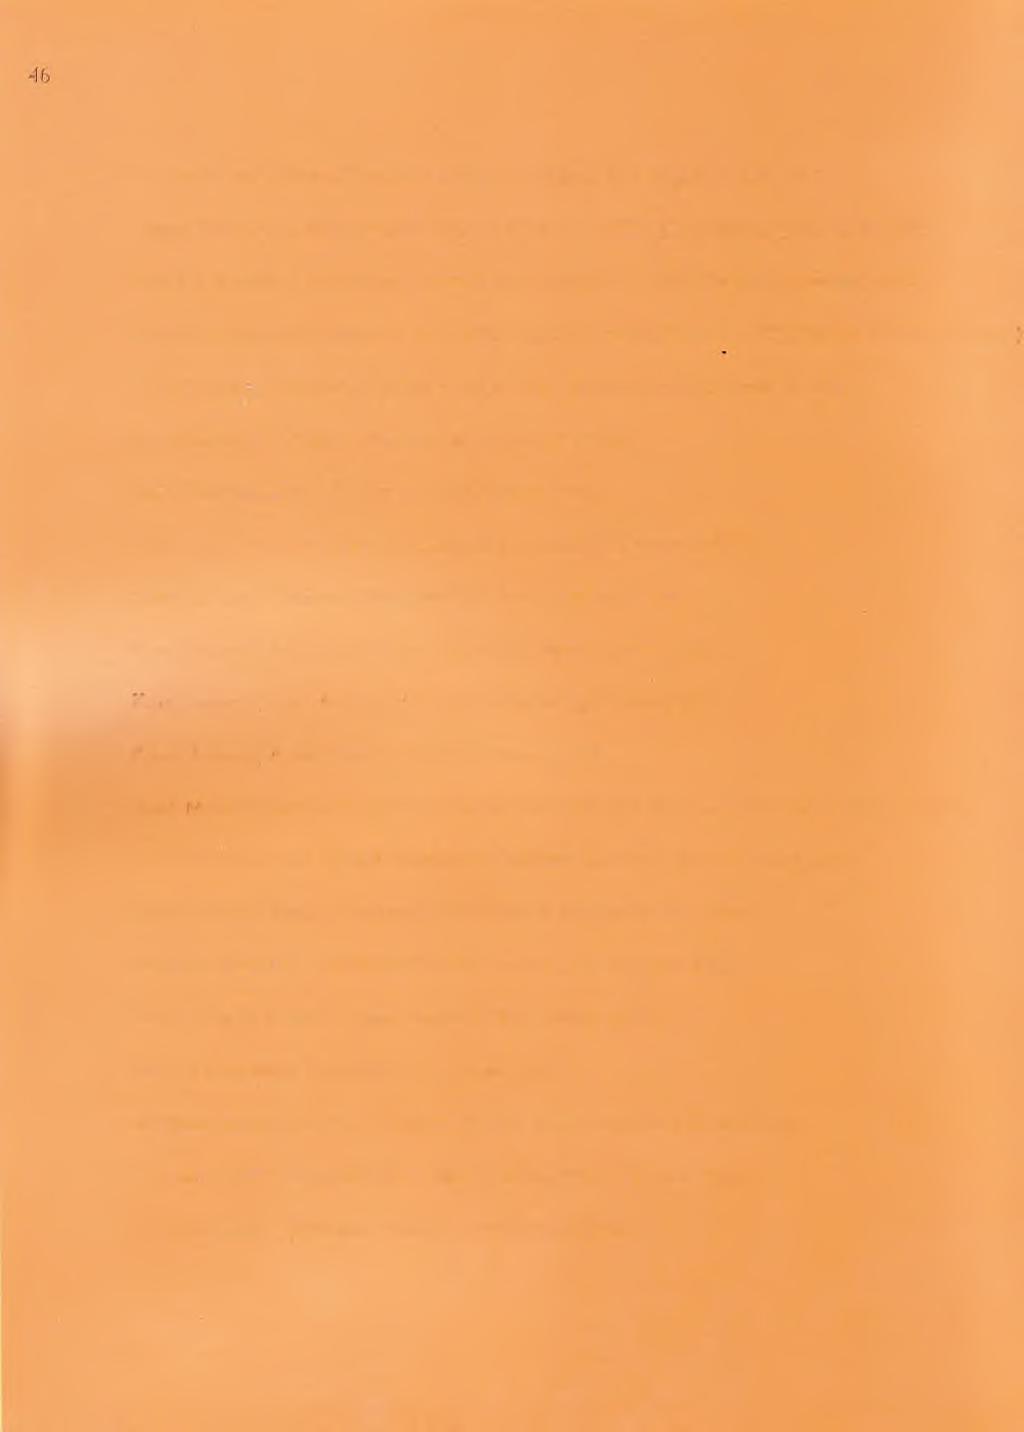 Knut Hamsun, D ü n y a N im eti. Ankara, Milli Eğitim Bakanlığı Yayınevi, 1949. August Strindberg, A çık D en iz K ıyısında. Ankara, Milli Eğitim Bakanlığı Yayınevi, 1951.